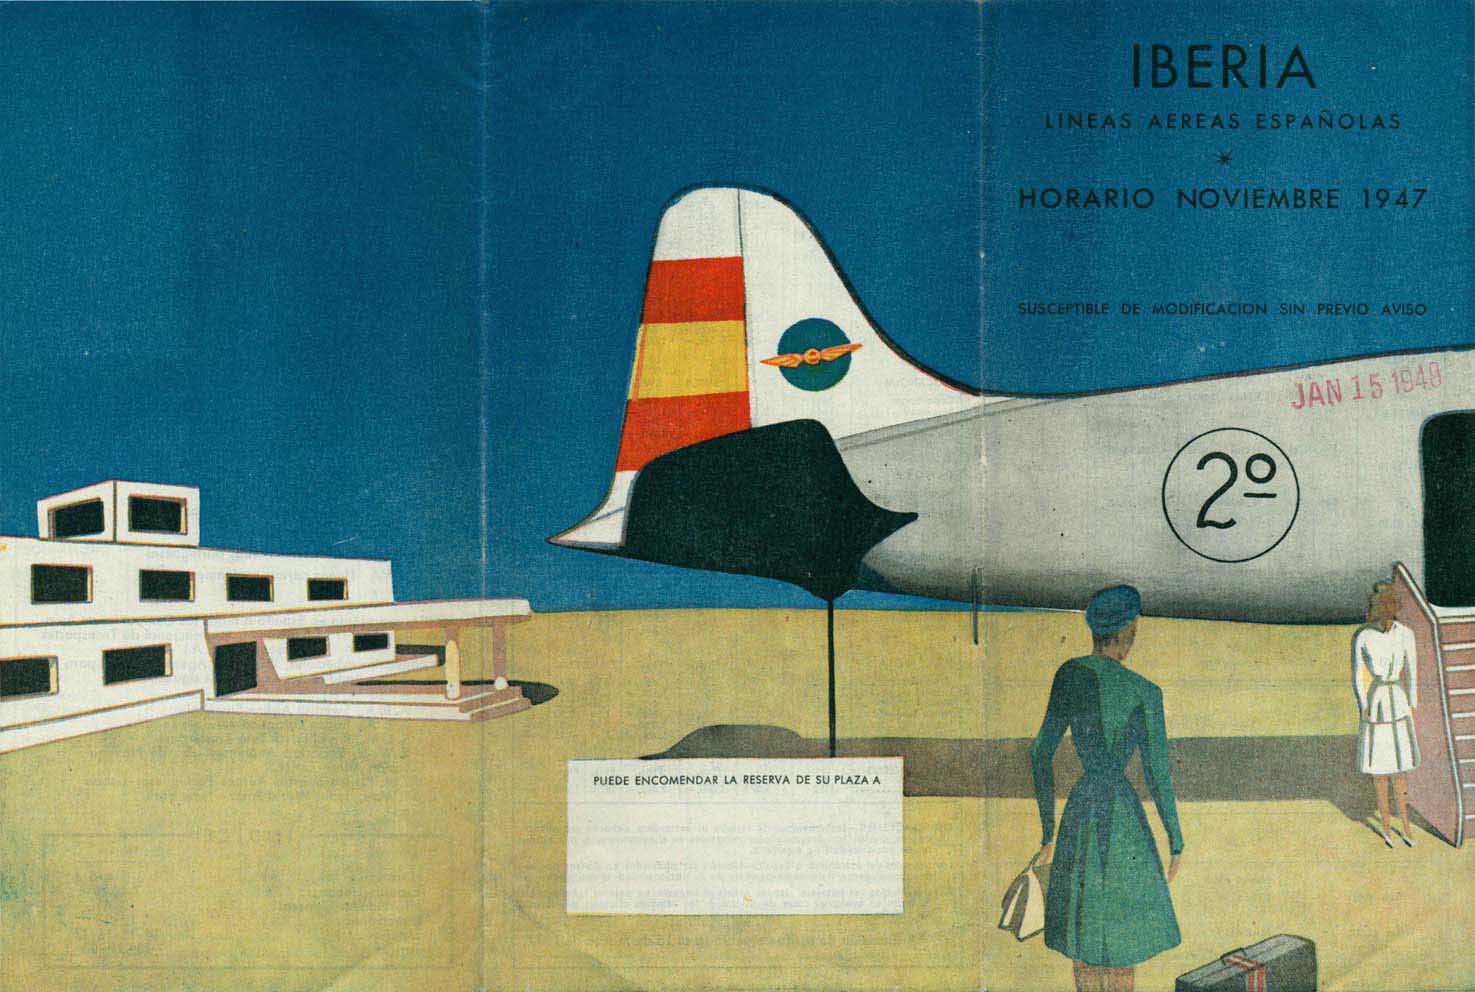 Portada de Tabla de horarios y tarifas de Iberia, de 1947. Colección de Diederik R. Vels Heijn.